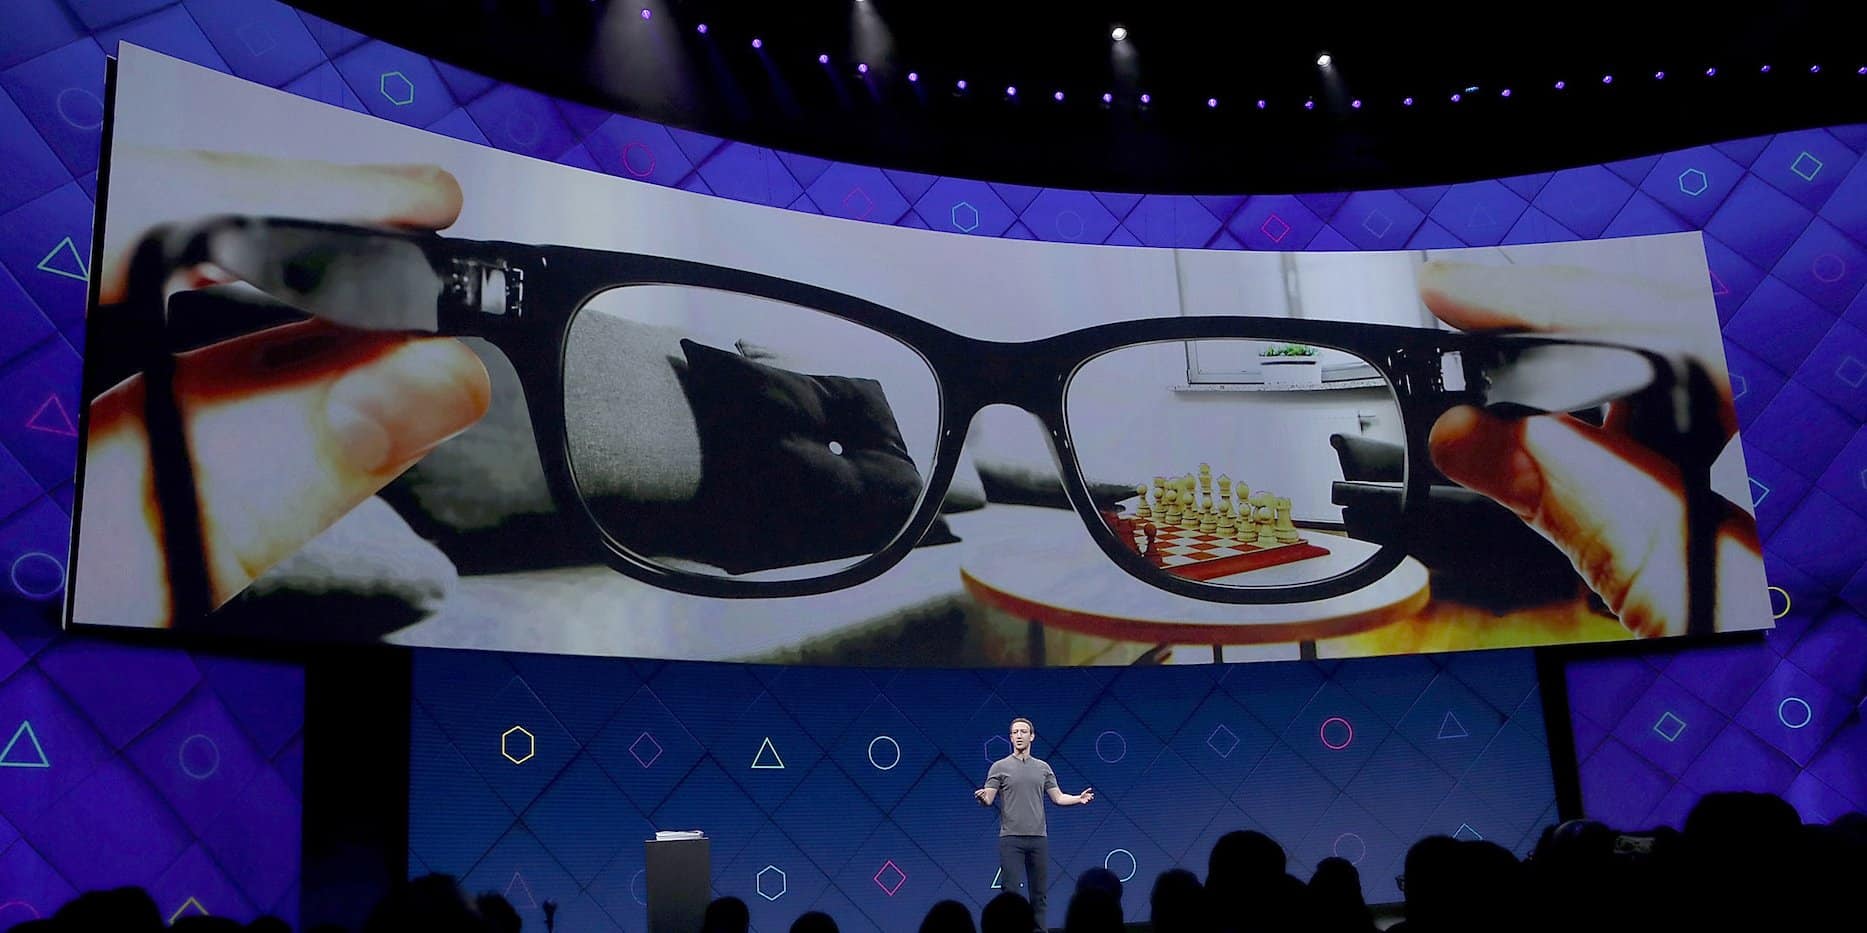 فيسبوك تطور نظارات ذكية لتحل محل هاتفك